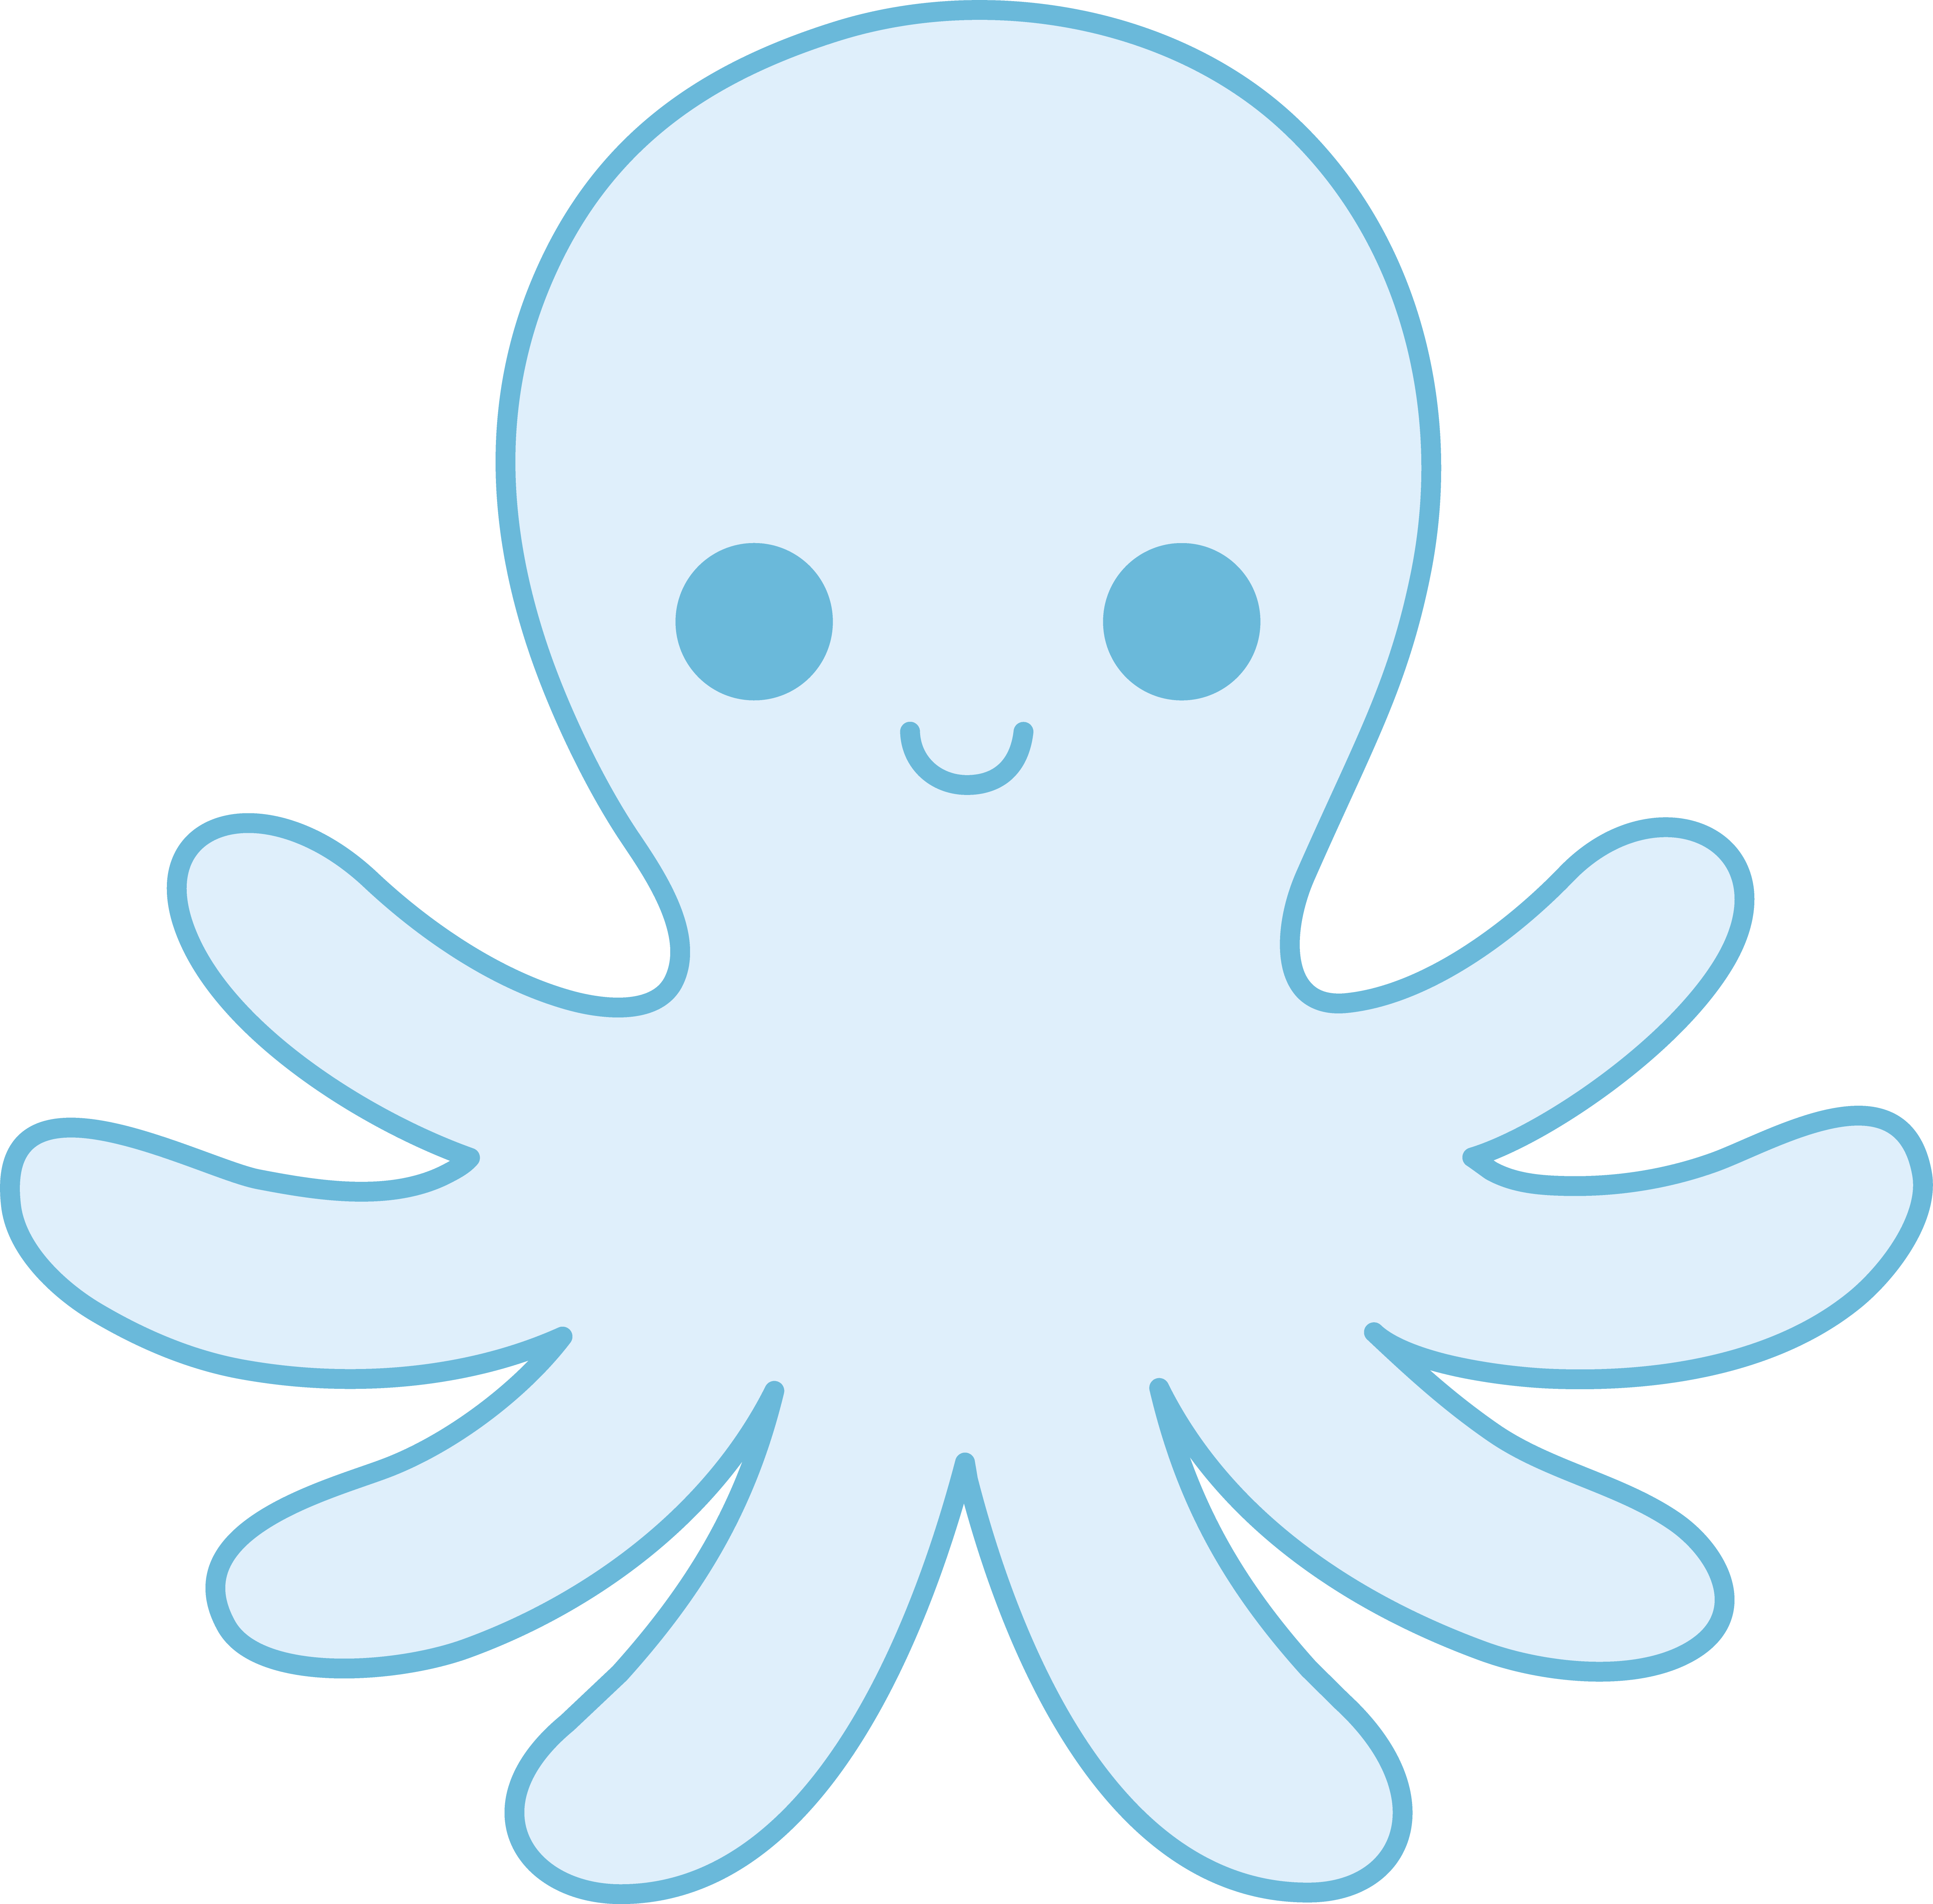 Octopus little blue